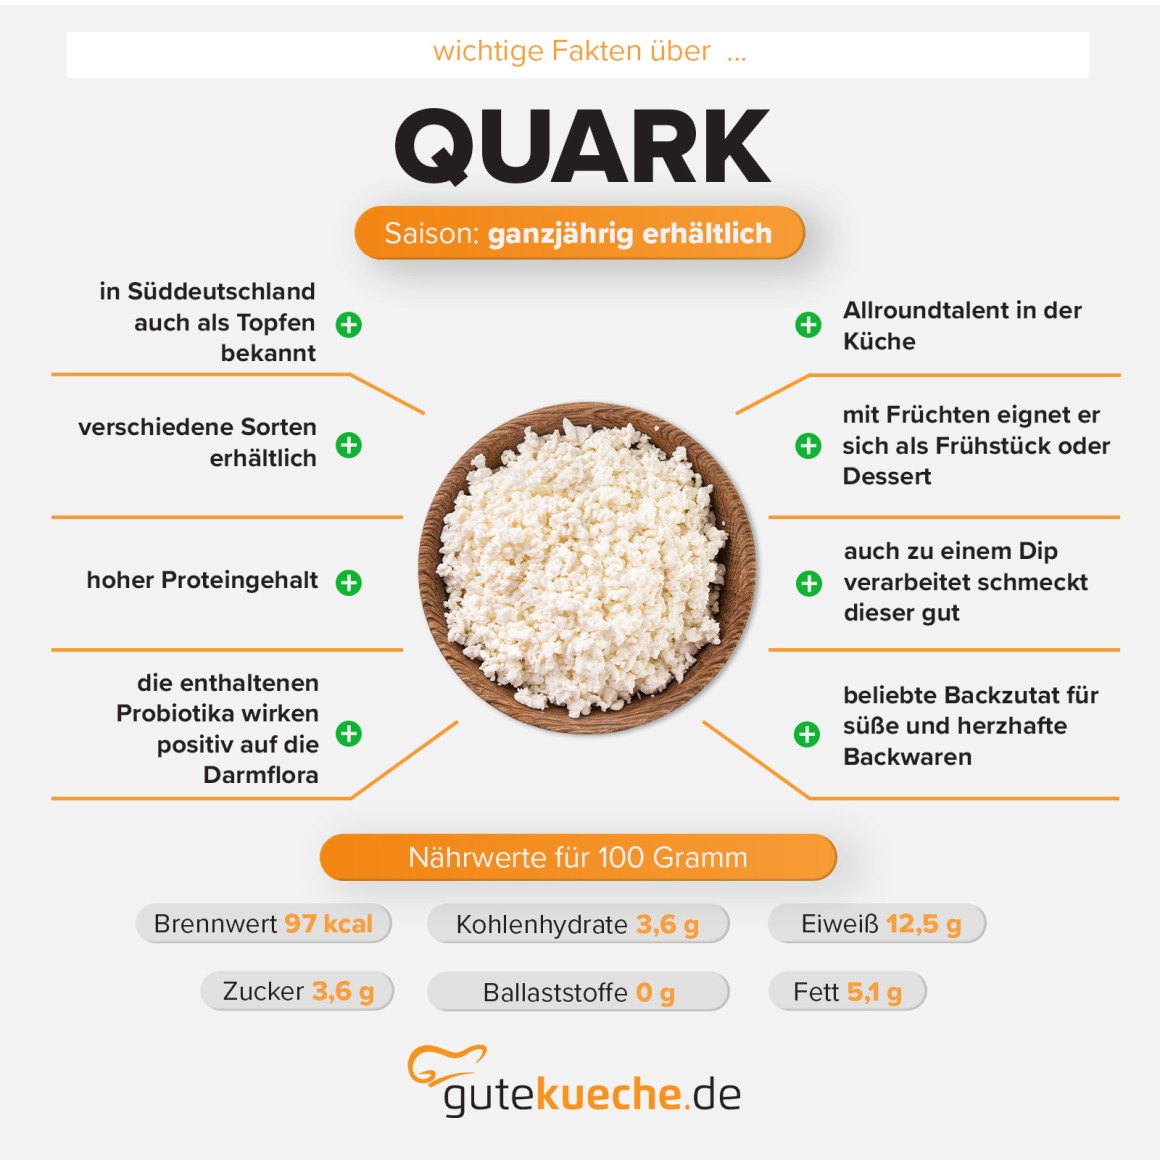 Topfen & Quark: Worin liegt der Unterschied?